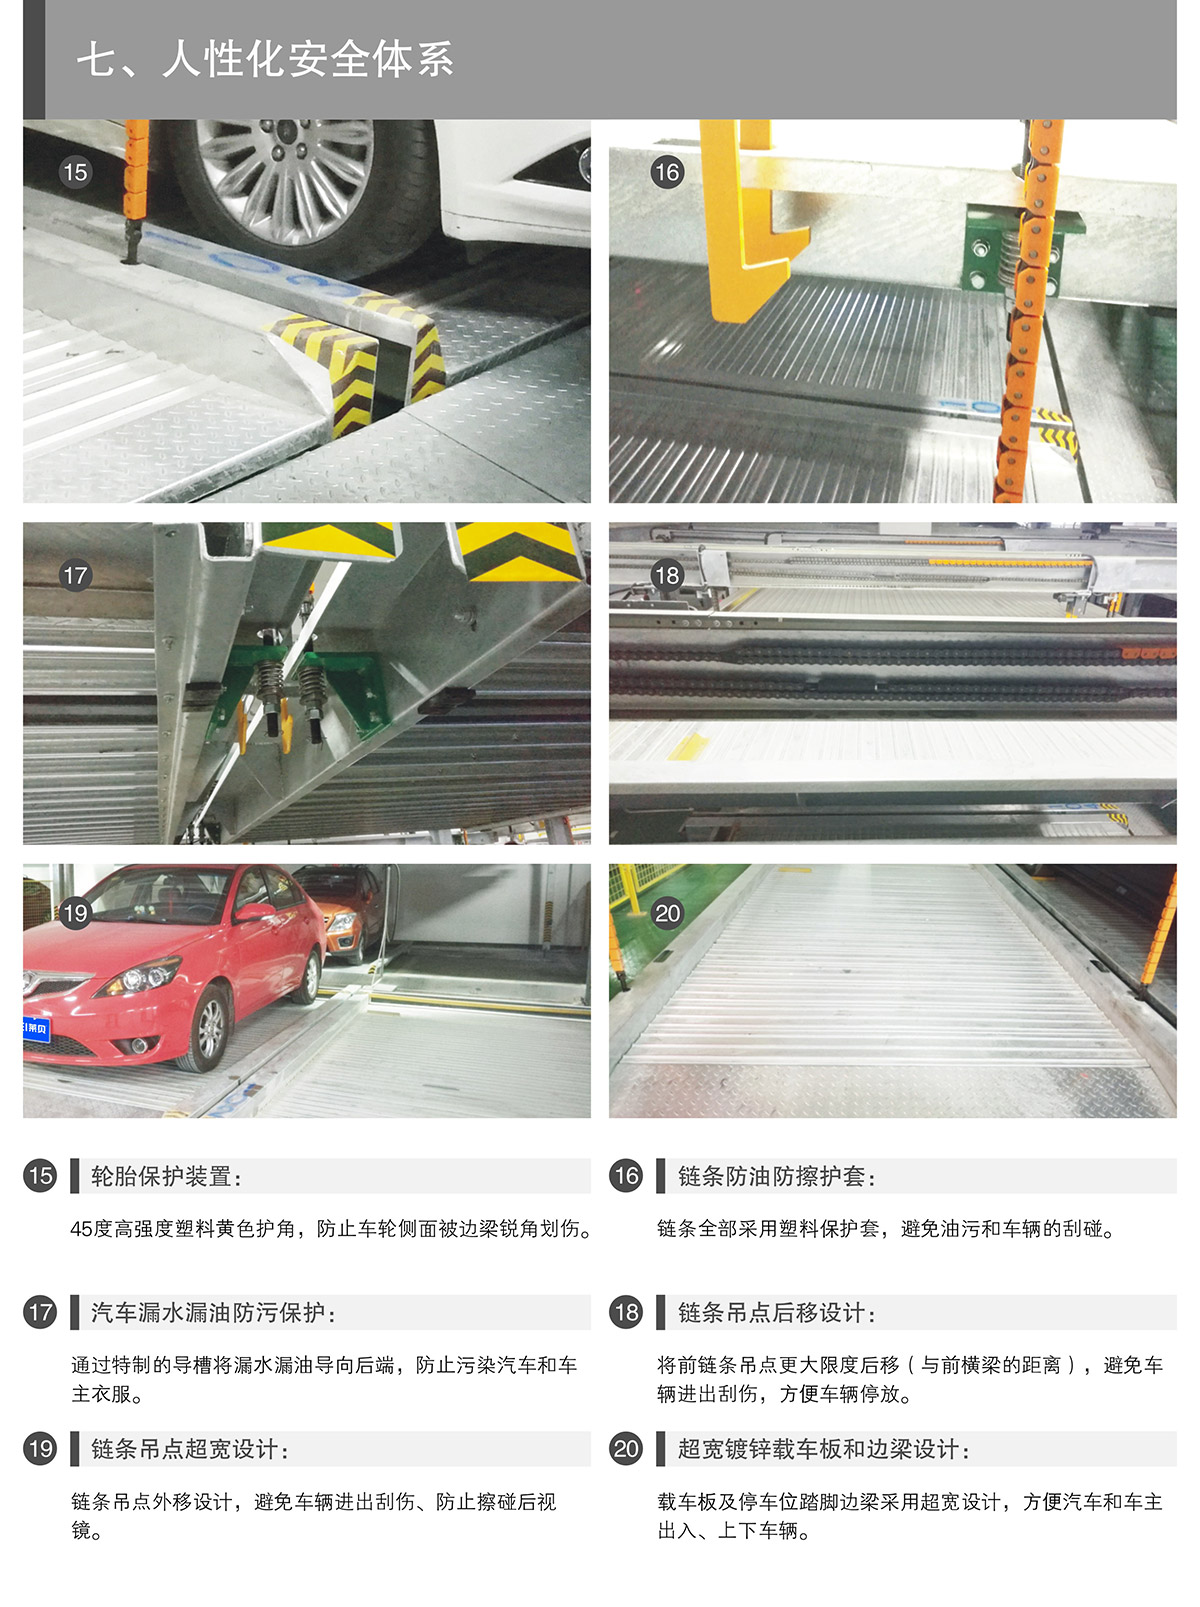 重庆PSH3-D1负一正二地坑三层升降横移类机械式立体停车设备人性化安全体系.jpg